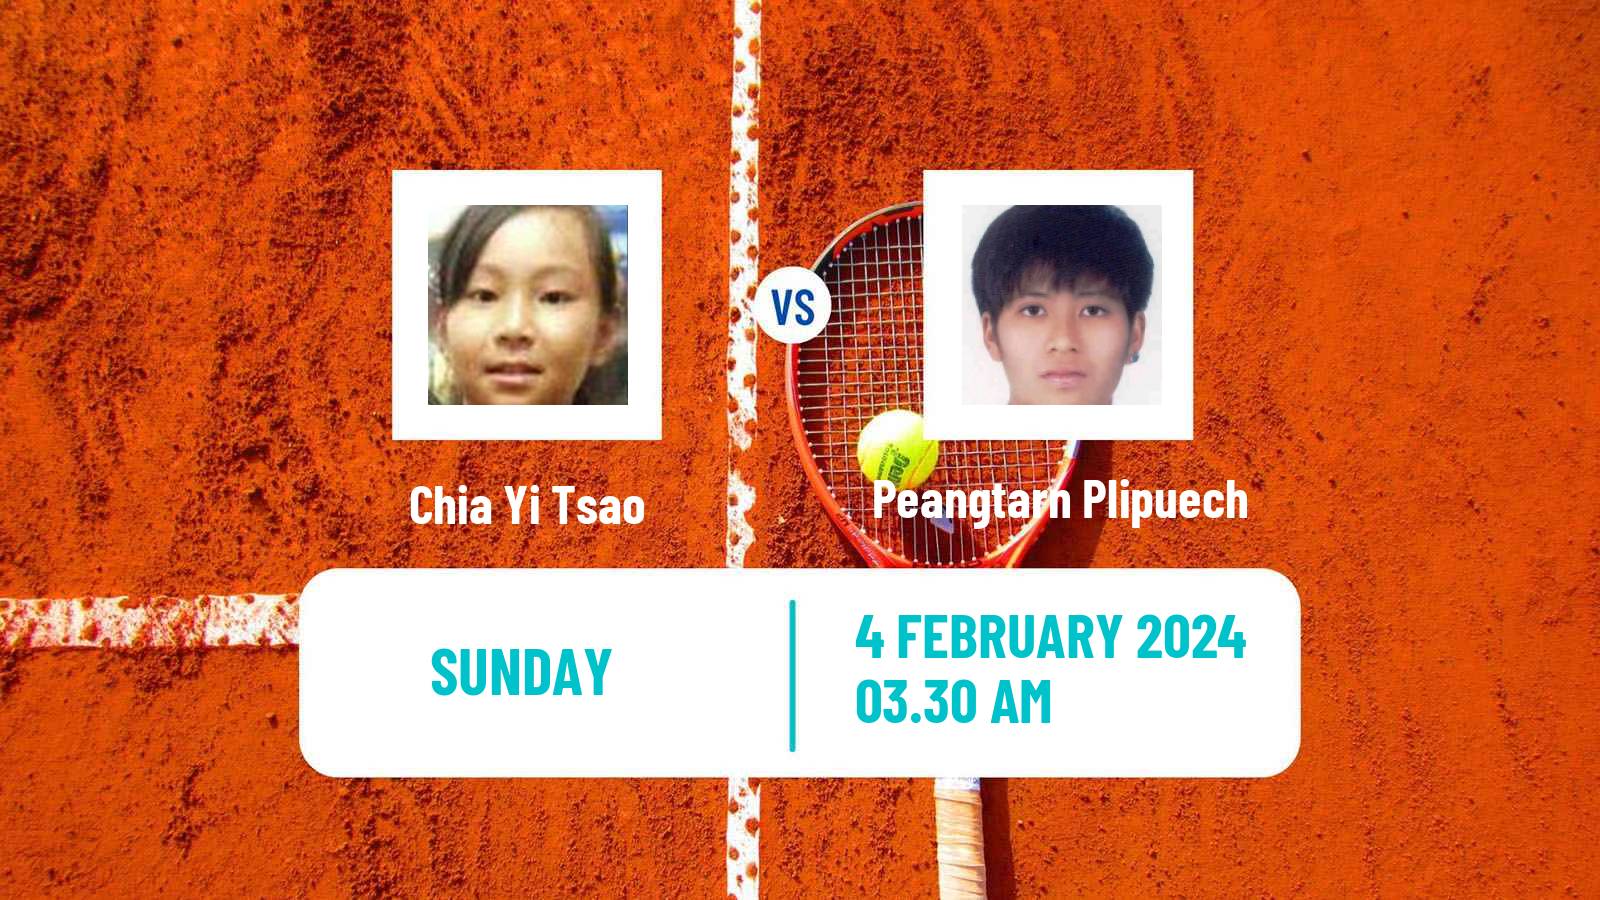 Tennis Mumbai Challenger Women Chia Yi Tsao - Peangtarn Plipuech